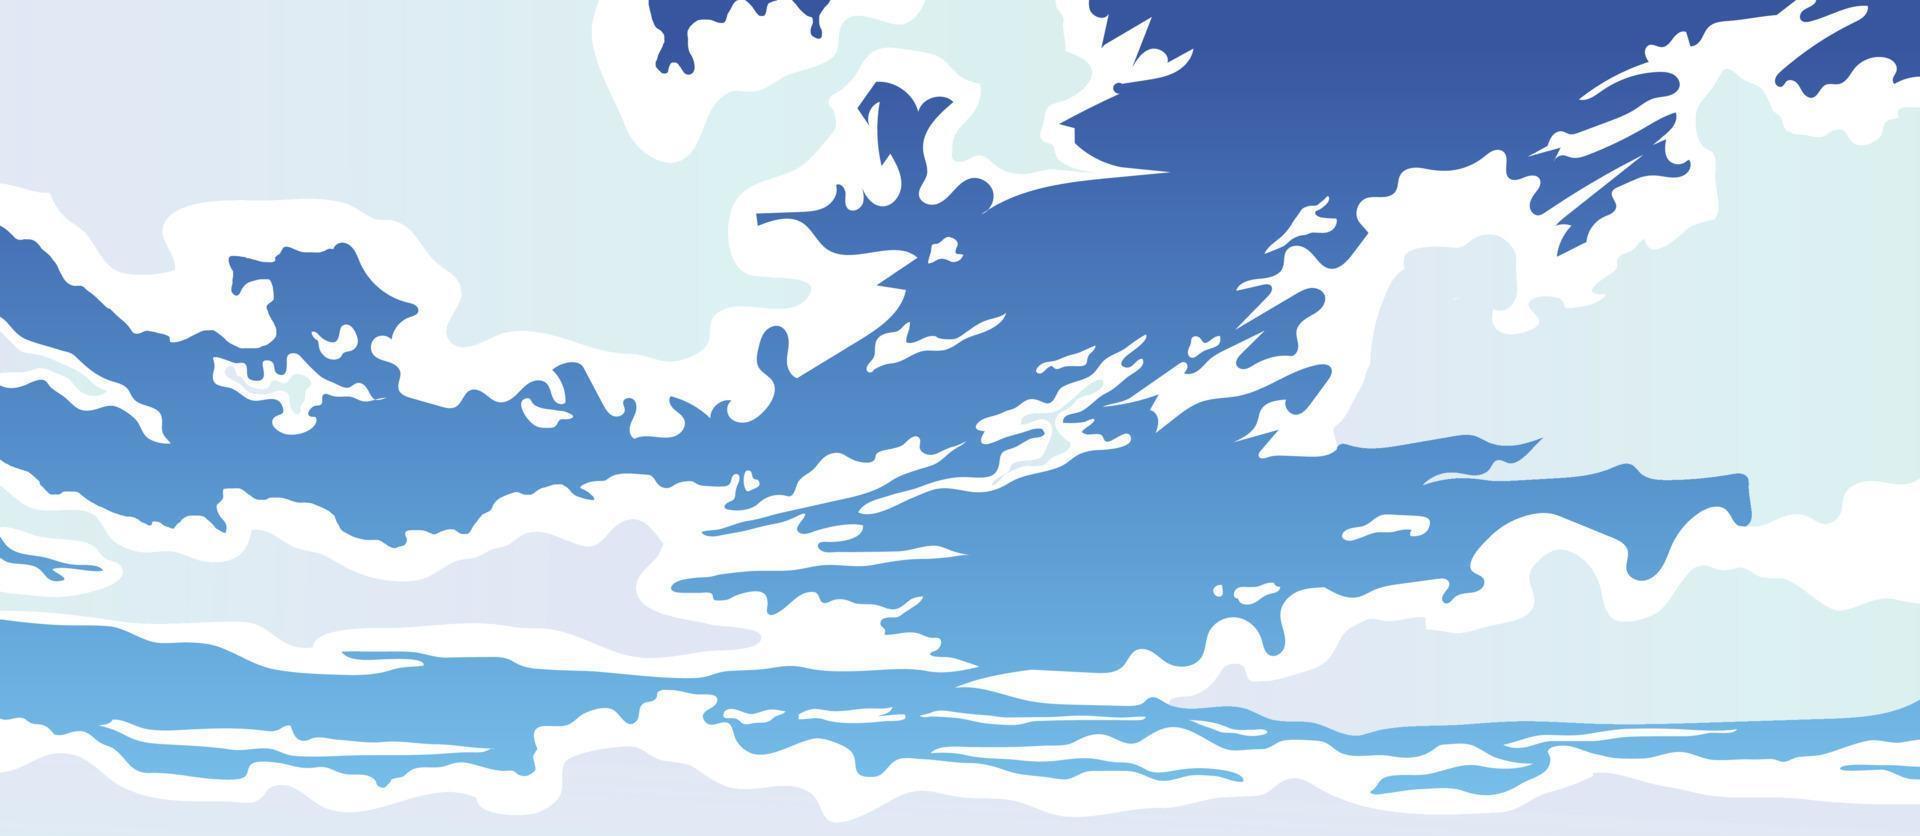 cielo de dibujos animados con nubes aleatorias ilustración de fondo vectorial diseño del cielo. vector